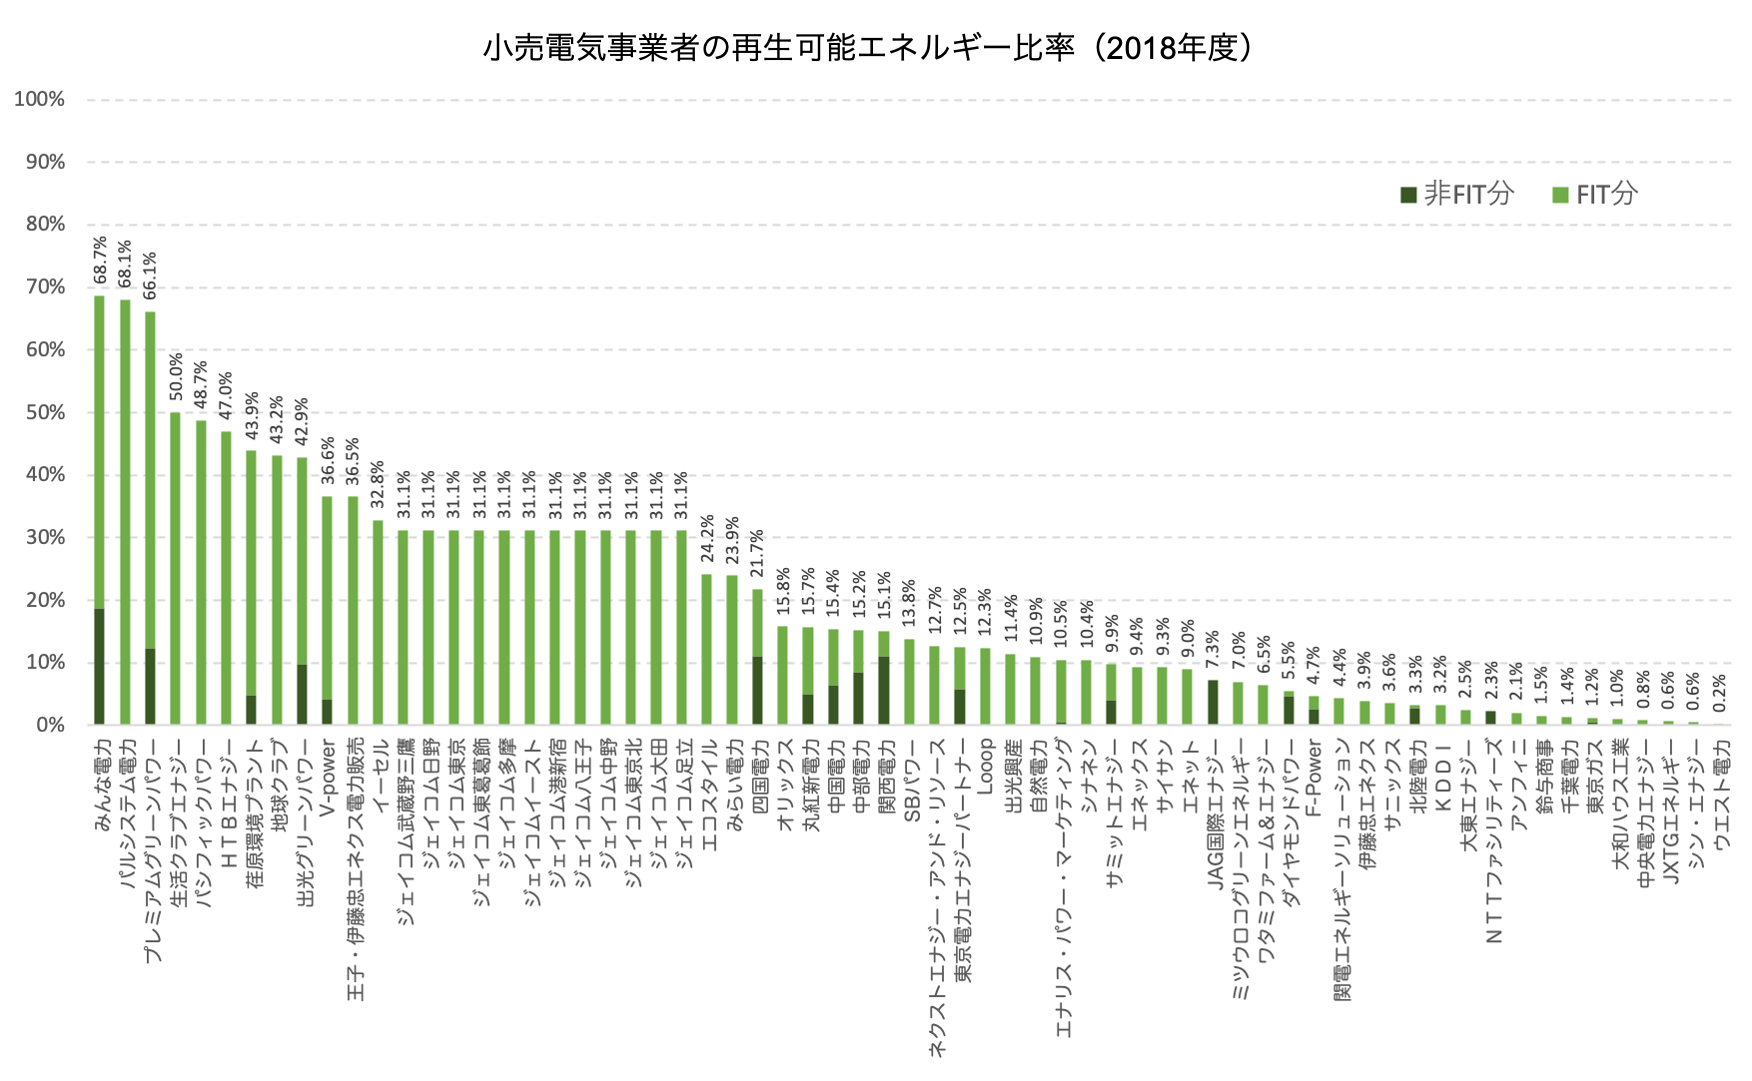 【日本】東京都、小売電力事業者の再生可能エネルギー比率発表。首位みんな電力 2